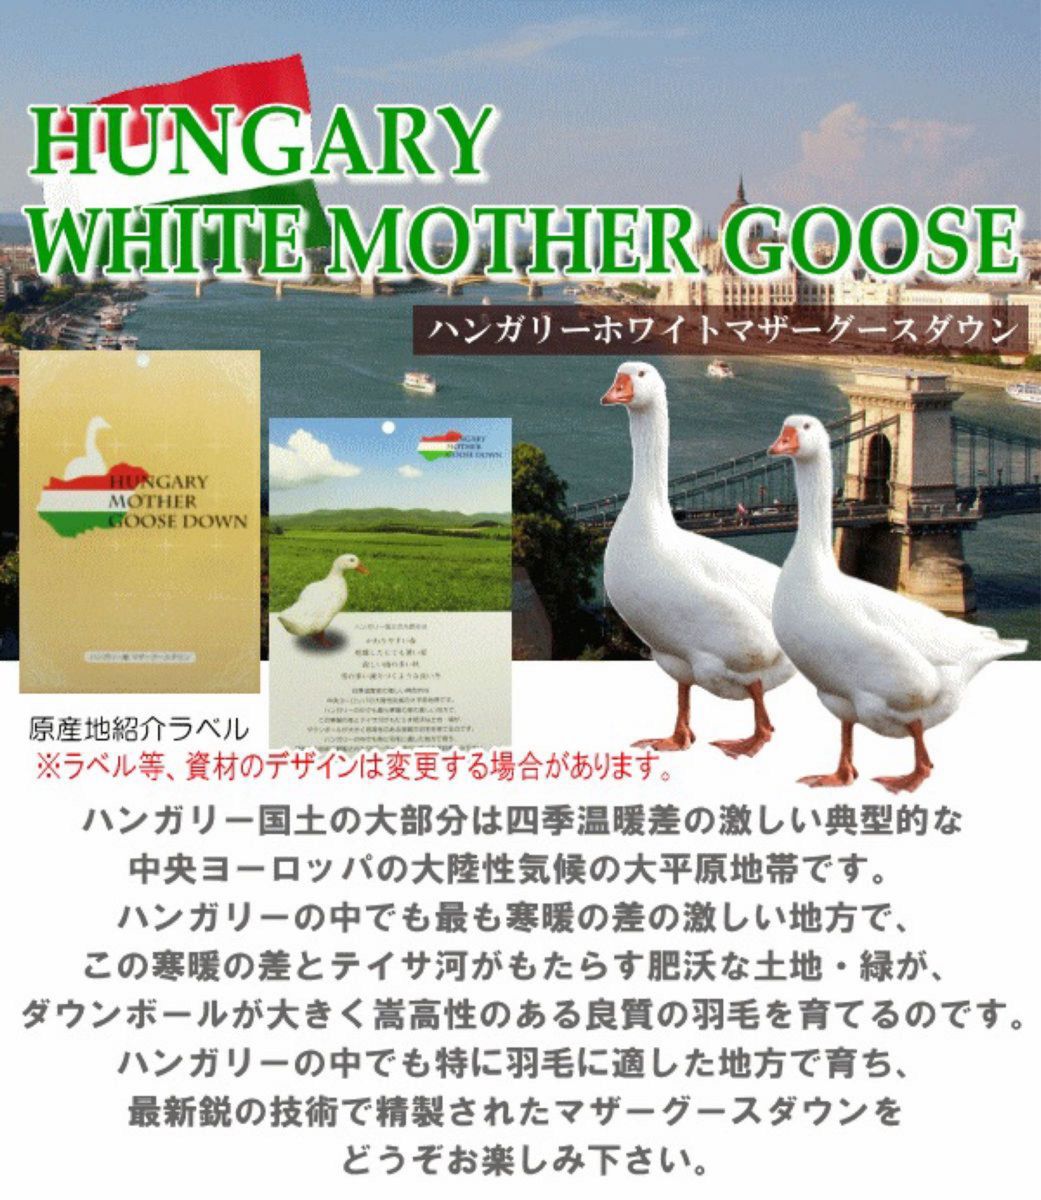 羽毛布団 ダブル ハンガリー産ホワイトマザーグース 二層キルト 超長綿 プレミアムゴールドラベル 日本製 生成り